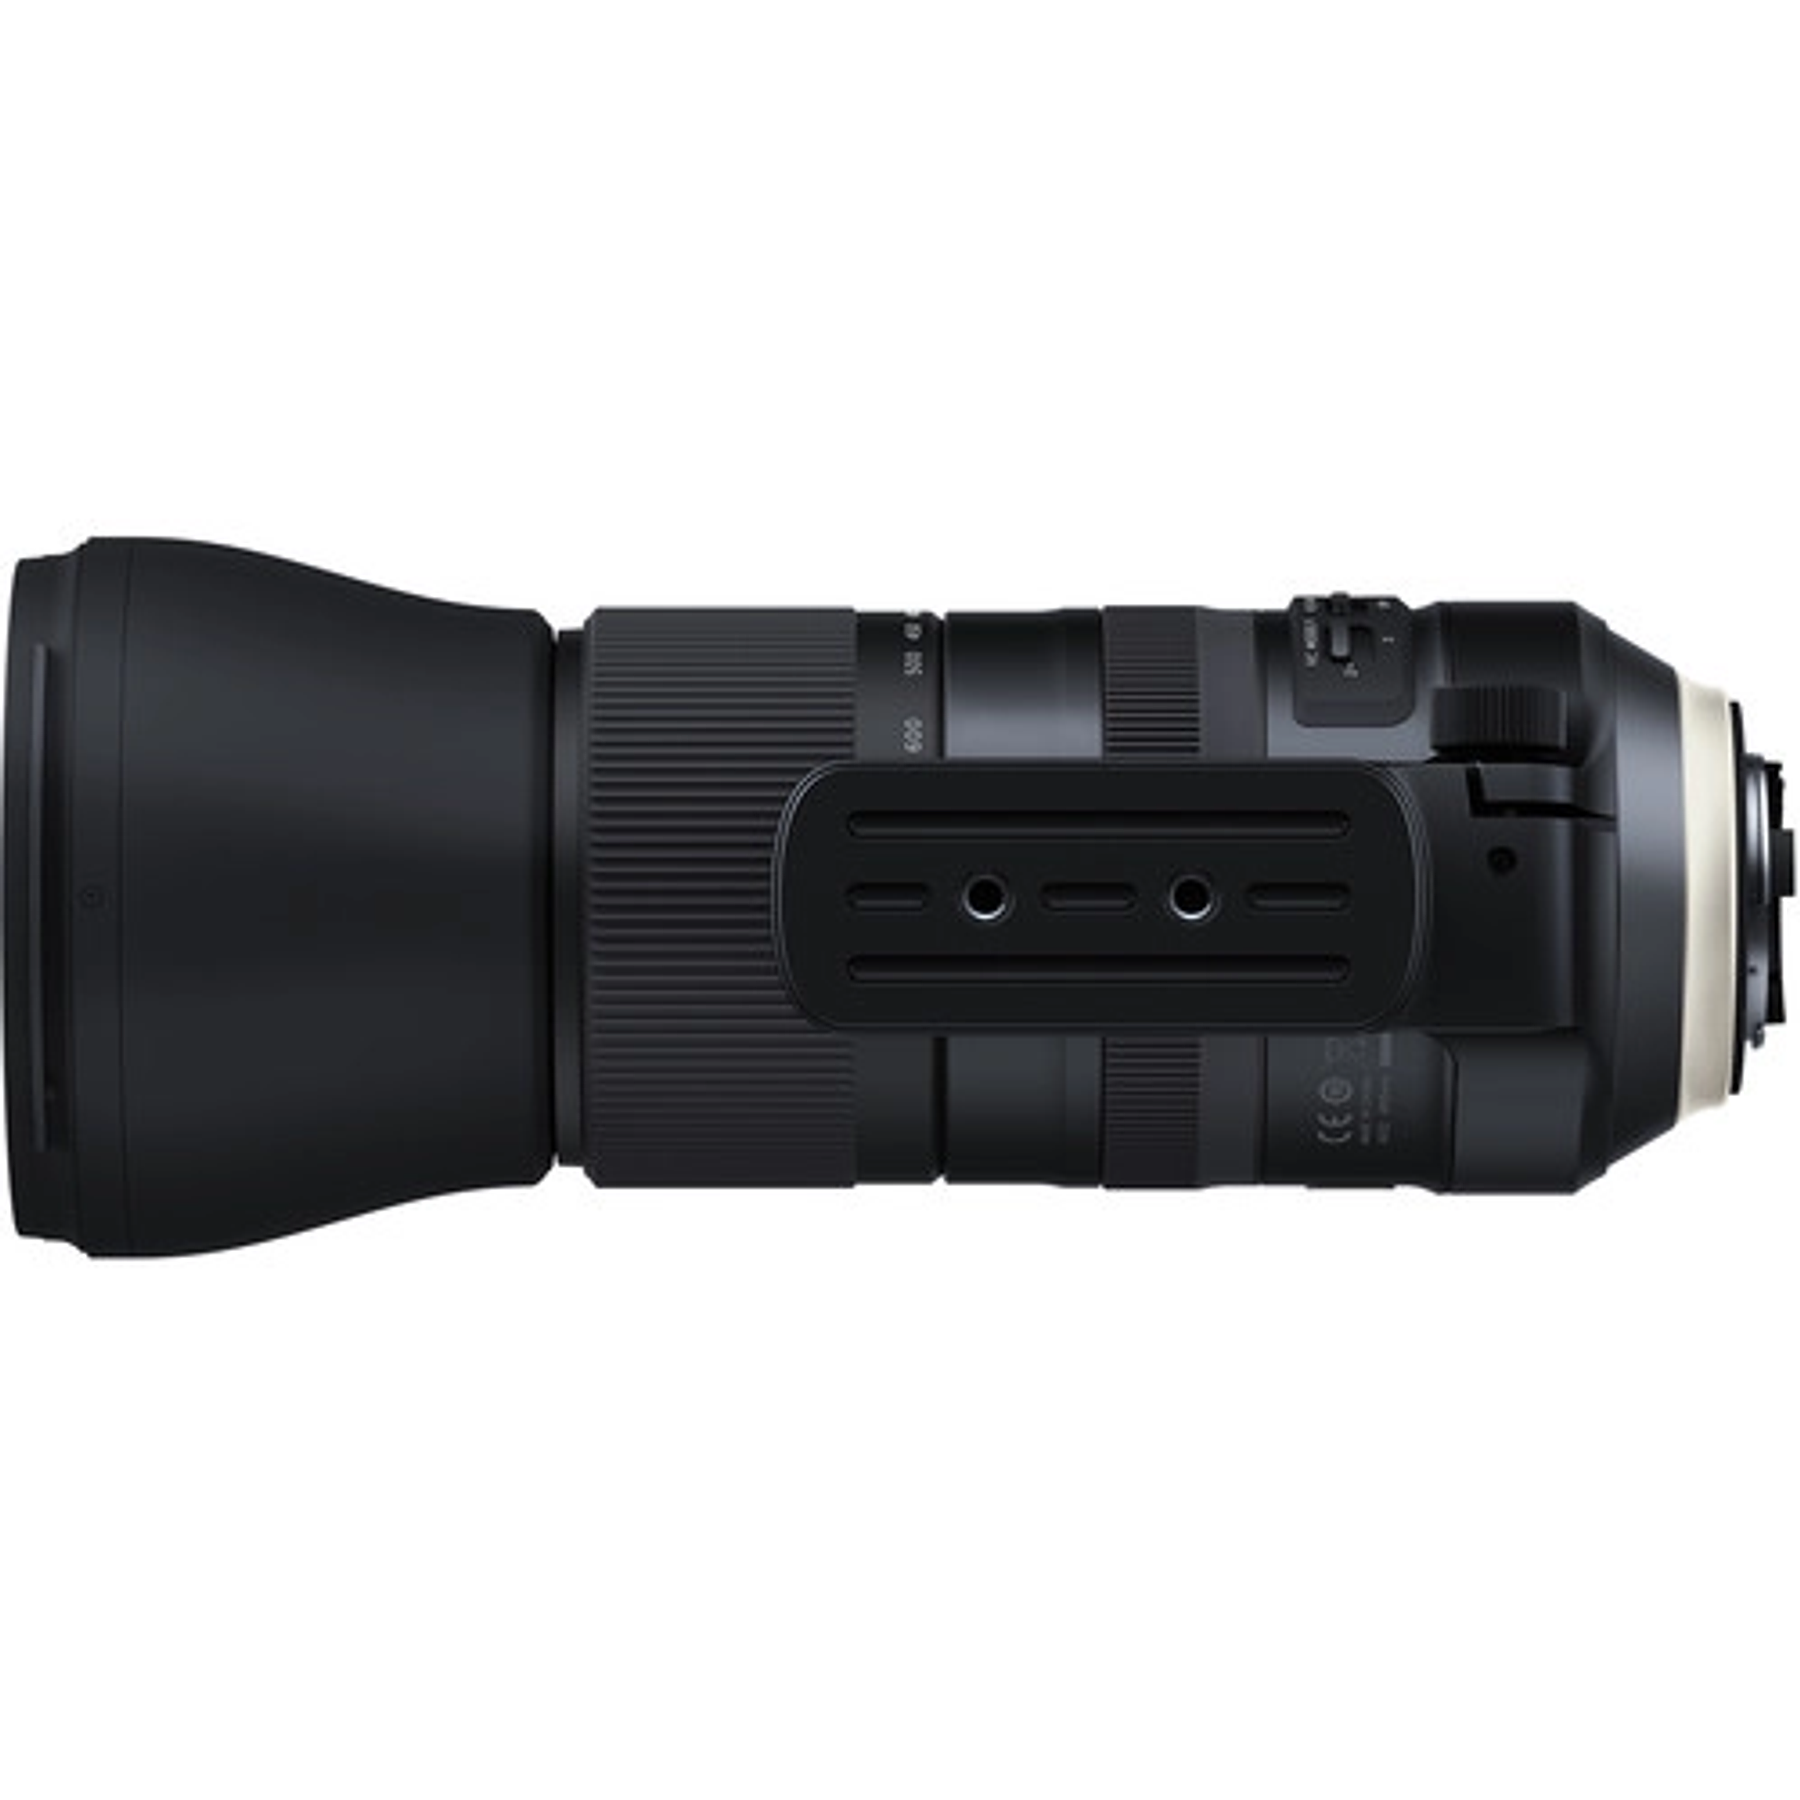 Tamron Lente SP 150-600mm f/5-6.3 G2 Di VC USD G2 para Canon/Nikon